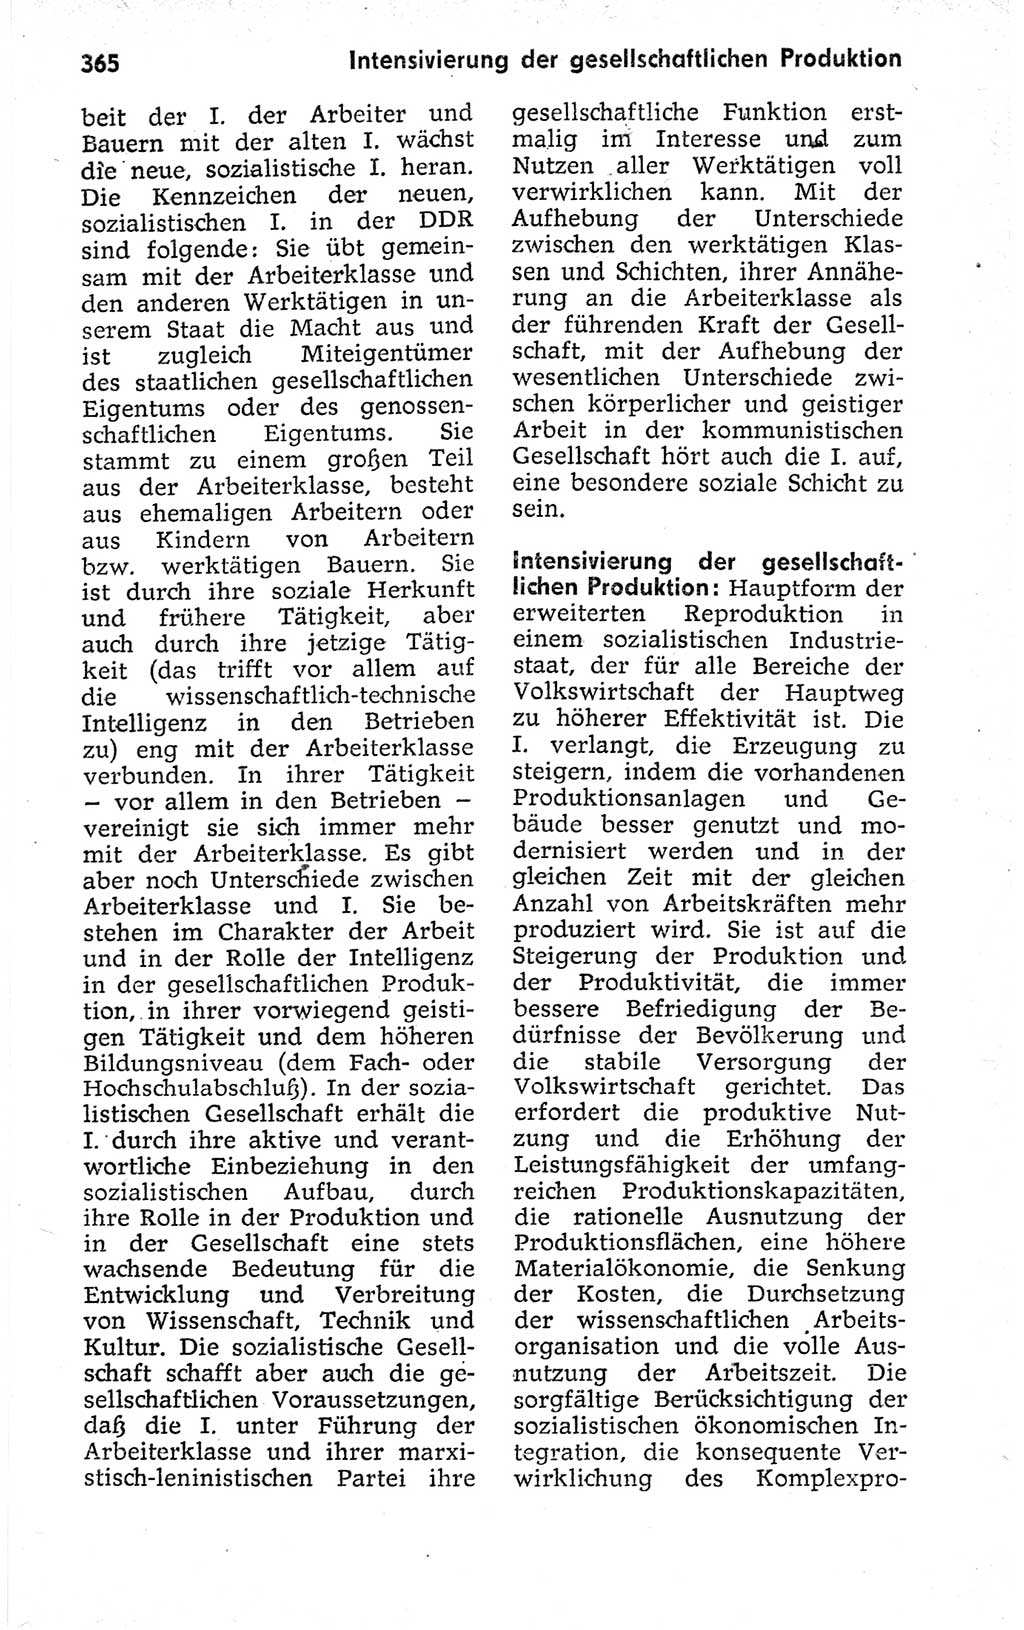 Kleines politisches Wörterbuch [Deutsche Demokratische Republik (DDR)] 1973, Seite 365 (Kl. pol. Wb. DDR 1973, S. 365)